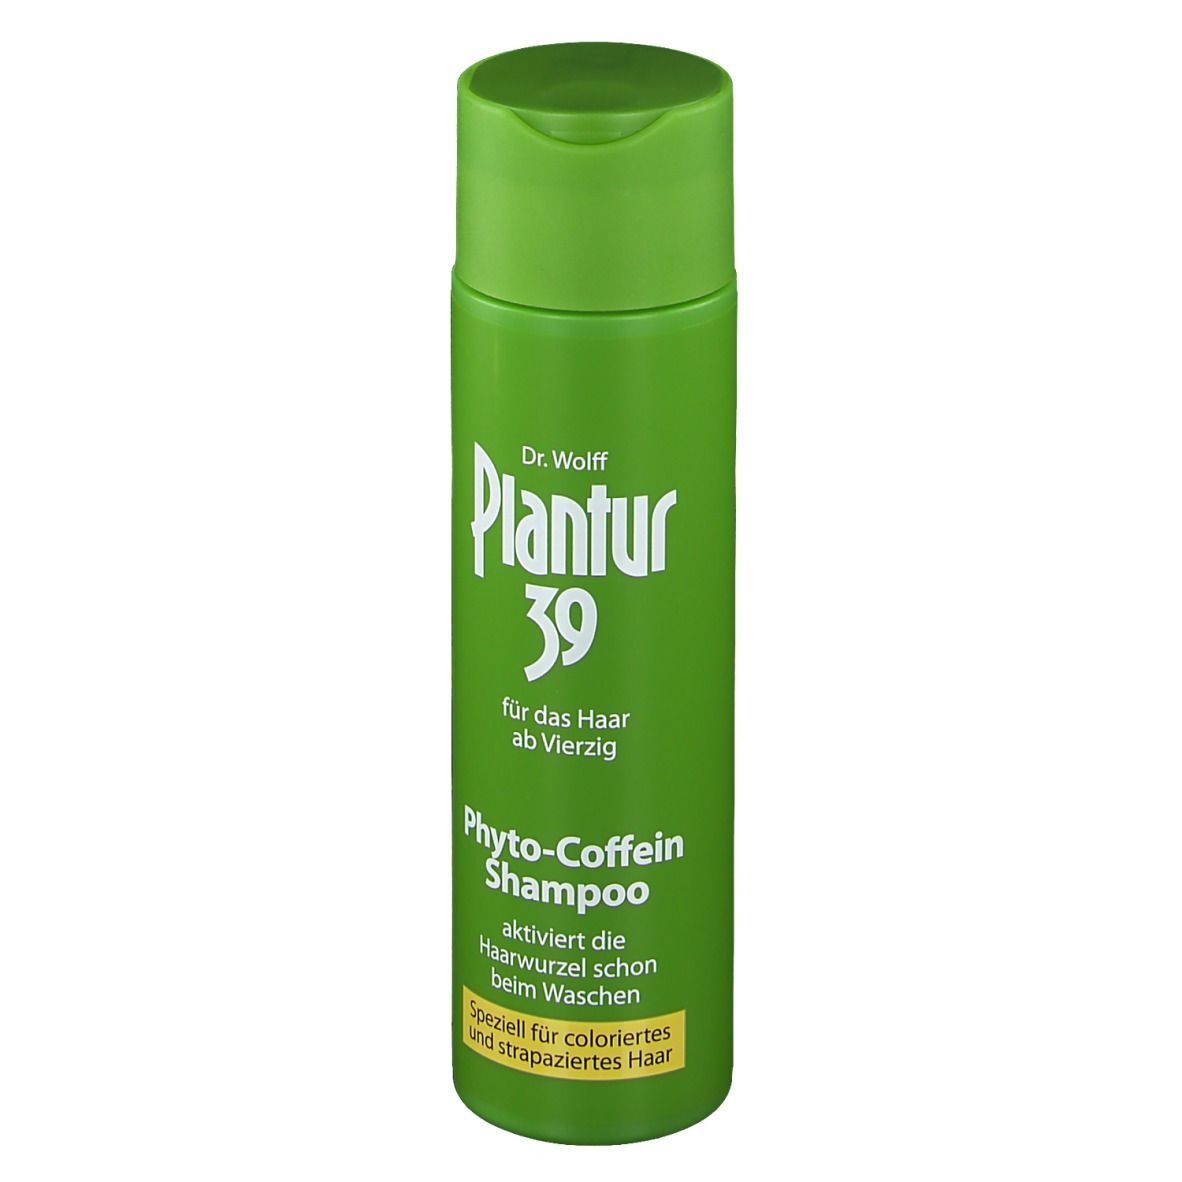 Plantur 39 Phyto-Coffein-Shampoo speziell für coloriertes und strapaziertes Haar